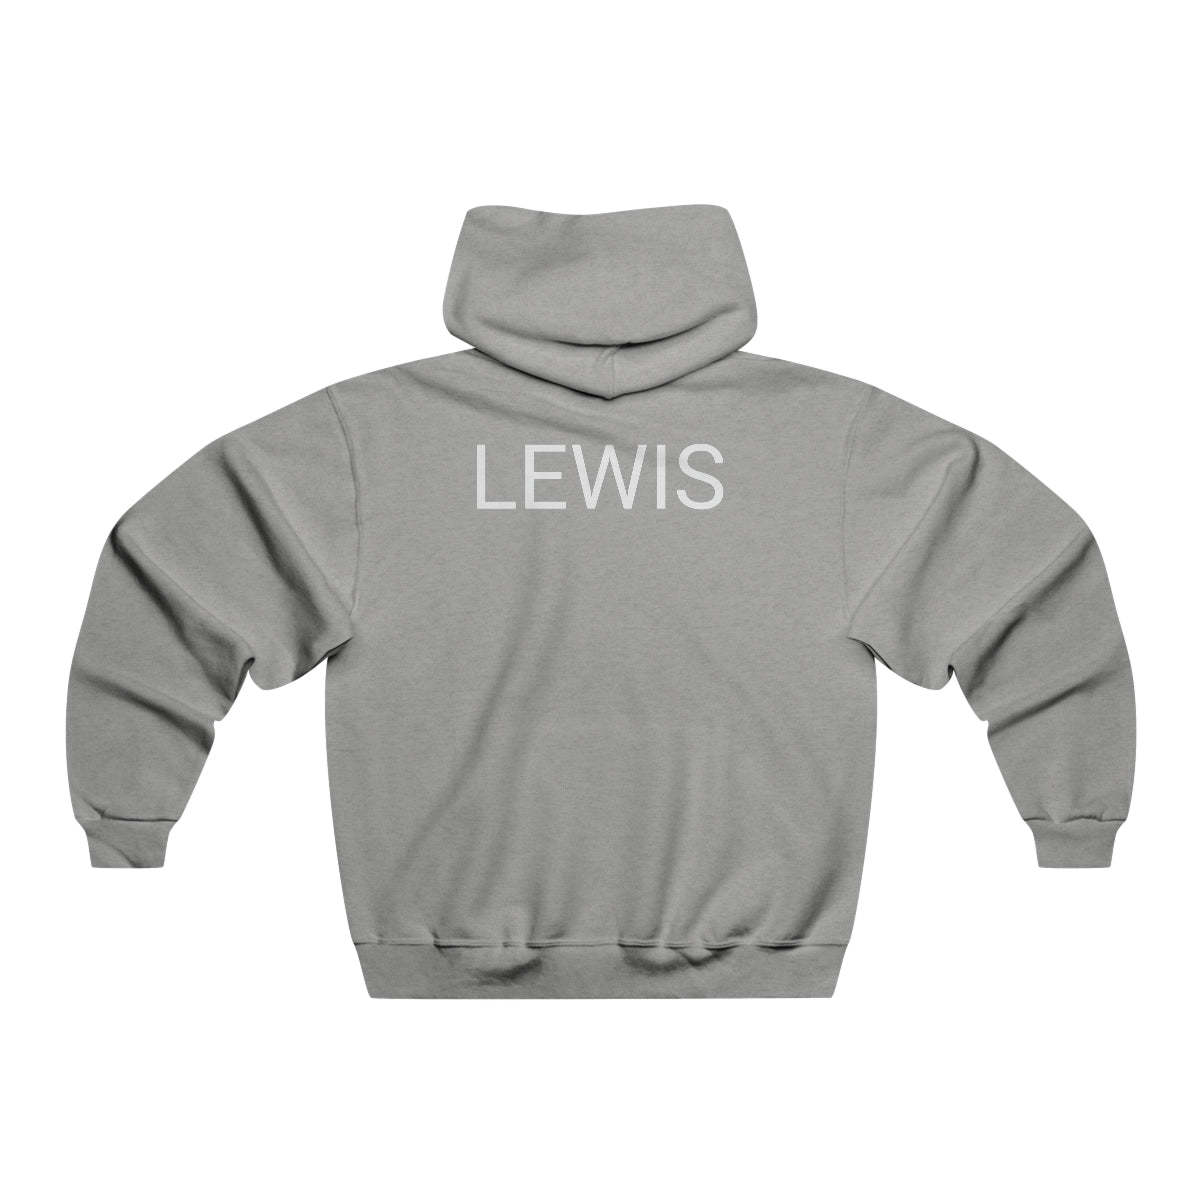 Junior Bassmasters High School Hooded Sweatshirt - PERSONALIZED (LEWIS)